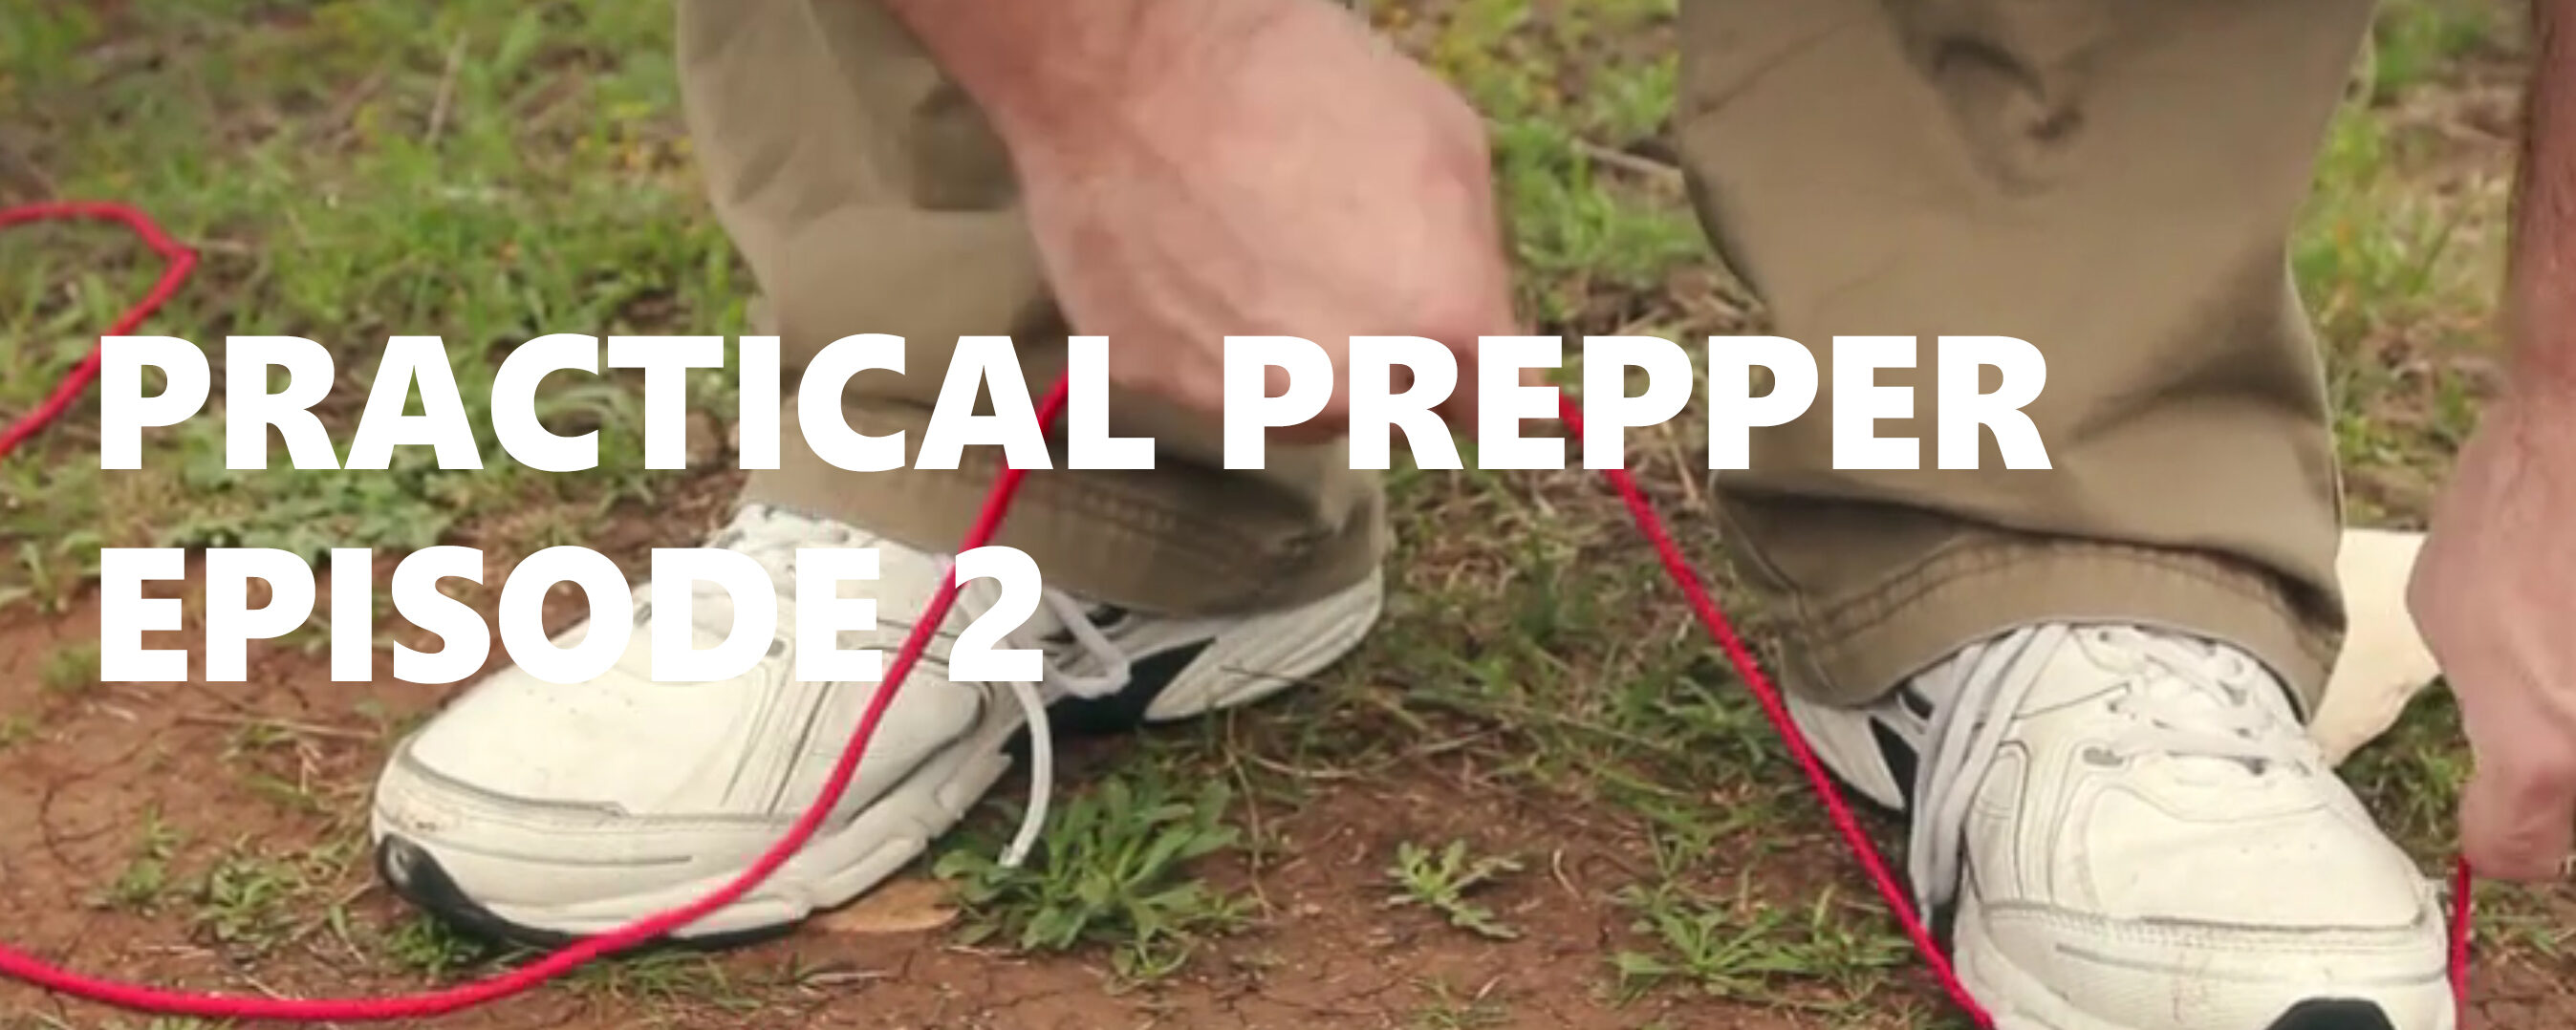 Practical Prepper Episode 2